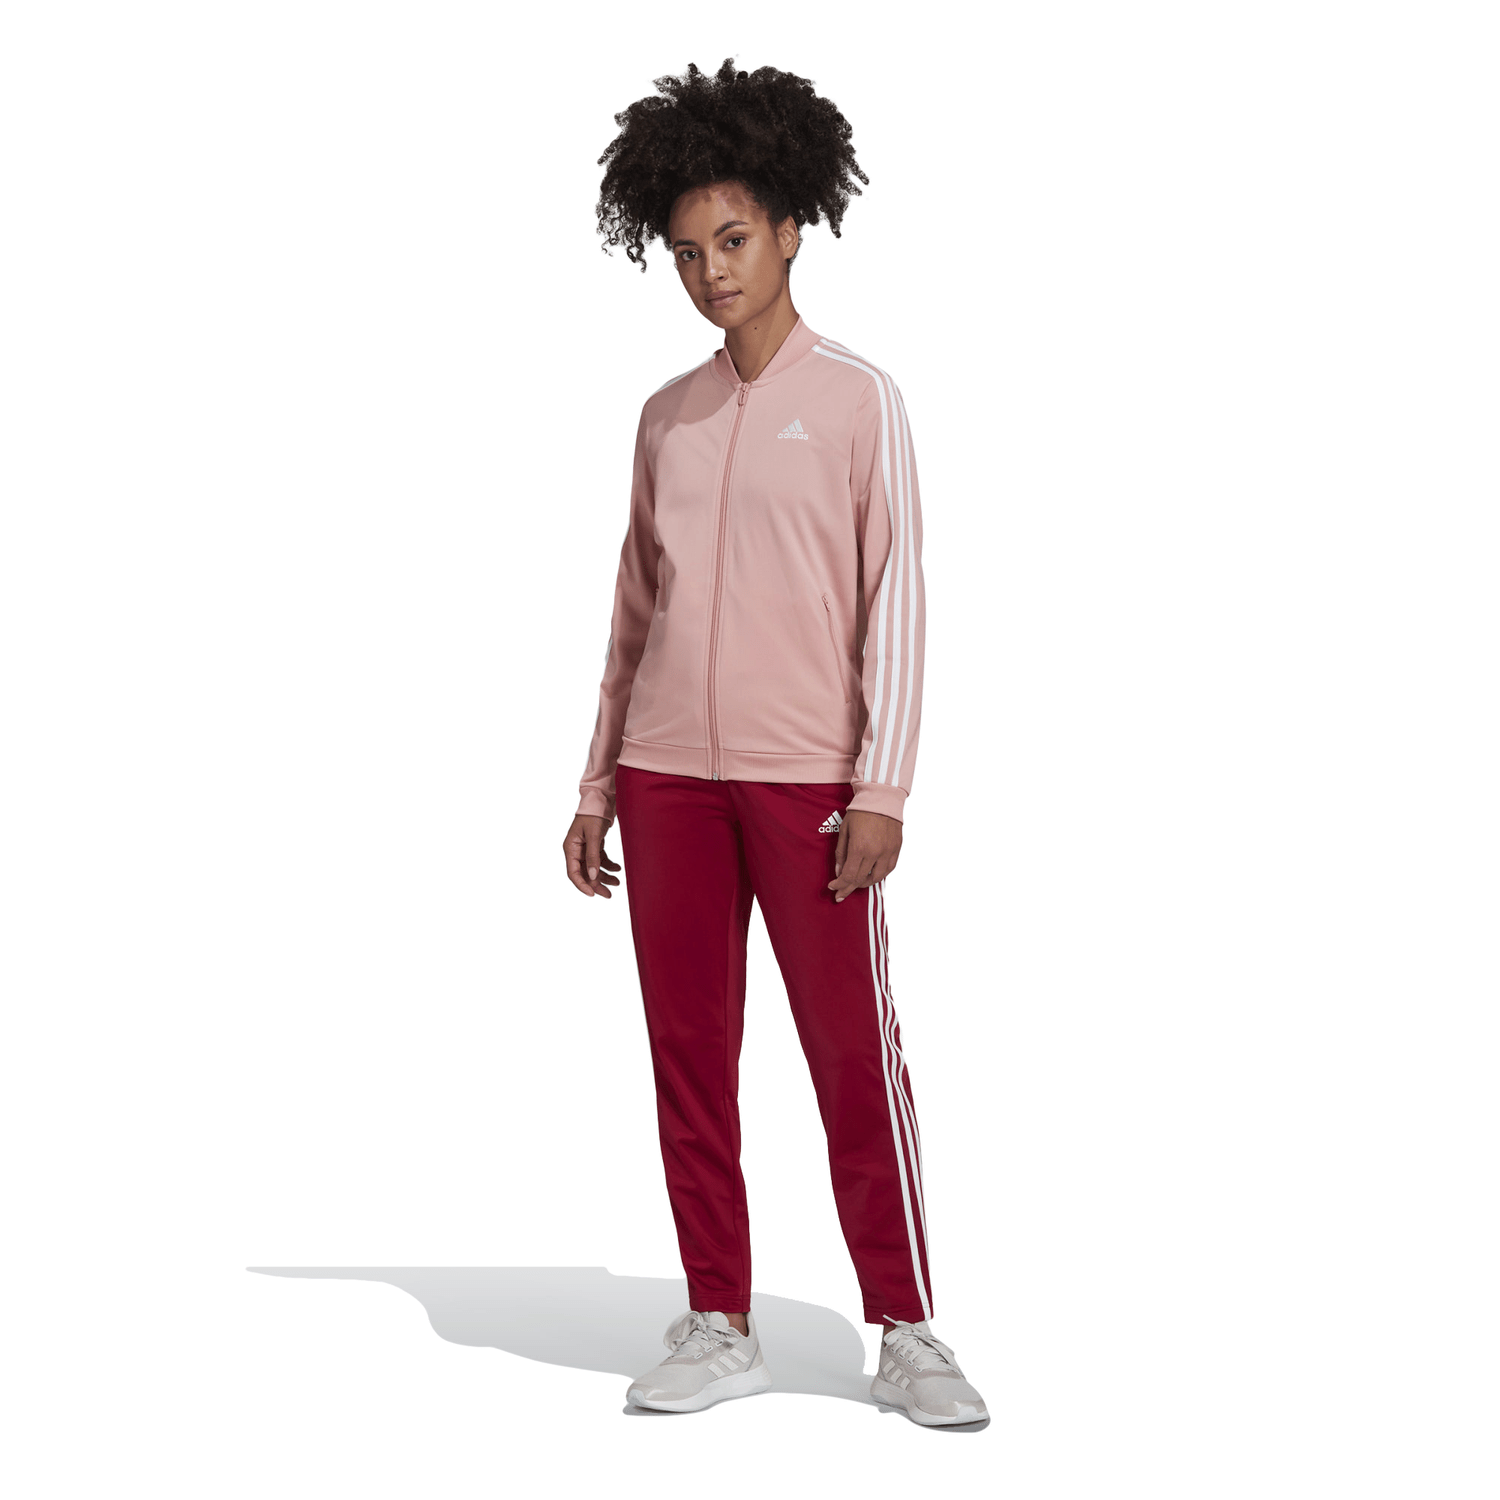 Agasalho Adidas Essentials 3-Stripes Rosa/ Vinho - Kapiva Calçados